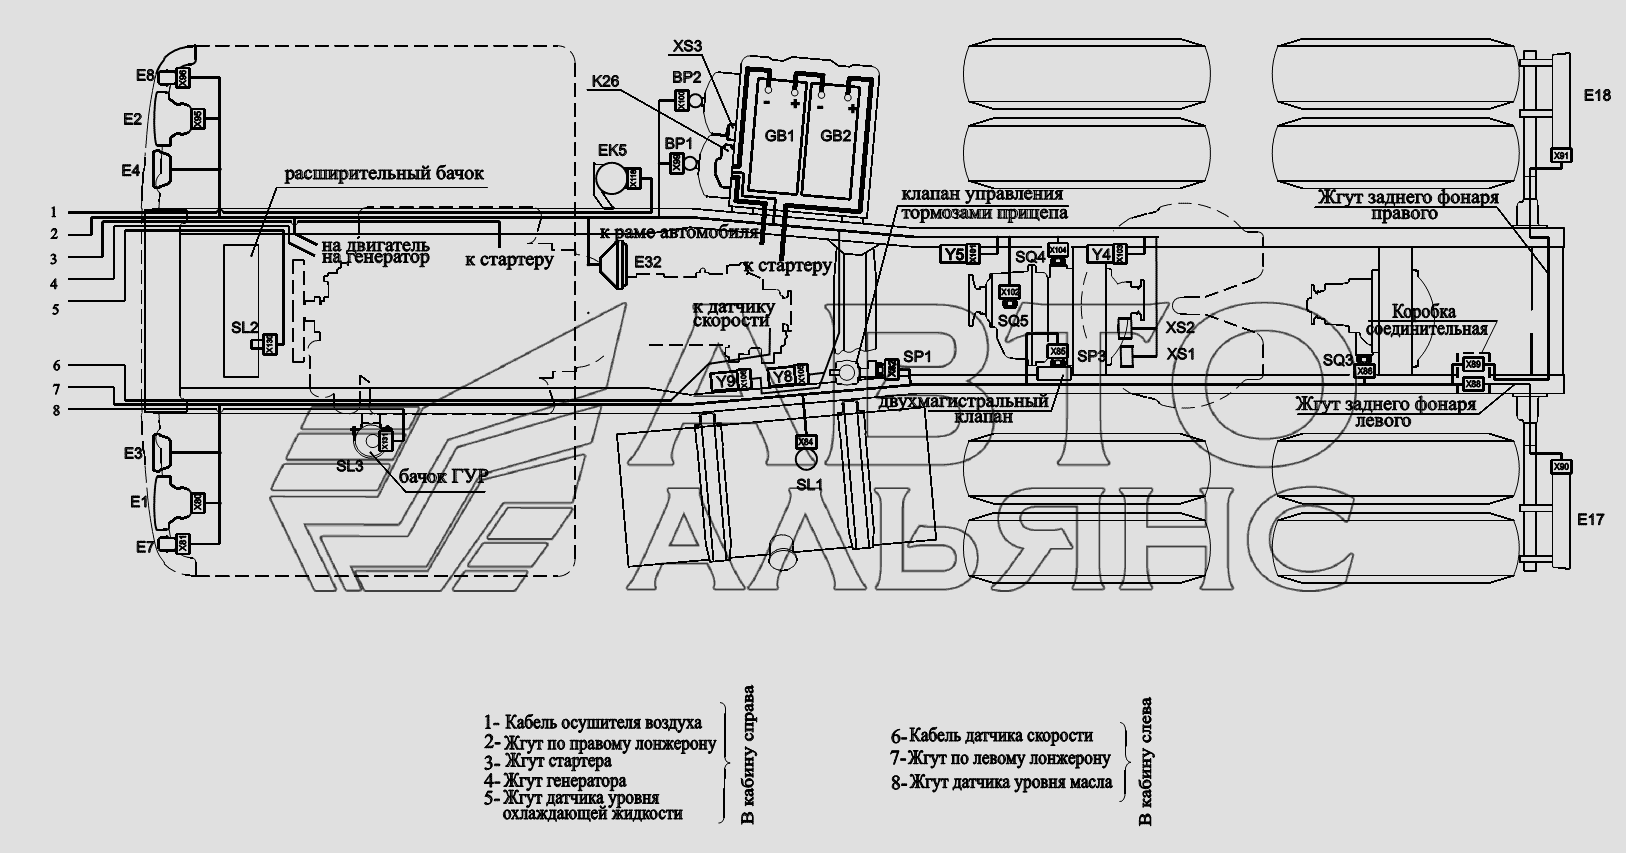 Расположение разъемов и элементов электрооборудования на шасси автомобилей (с гидроотбором) МАЗ-6422, 5432